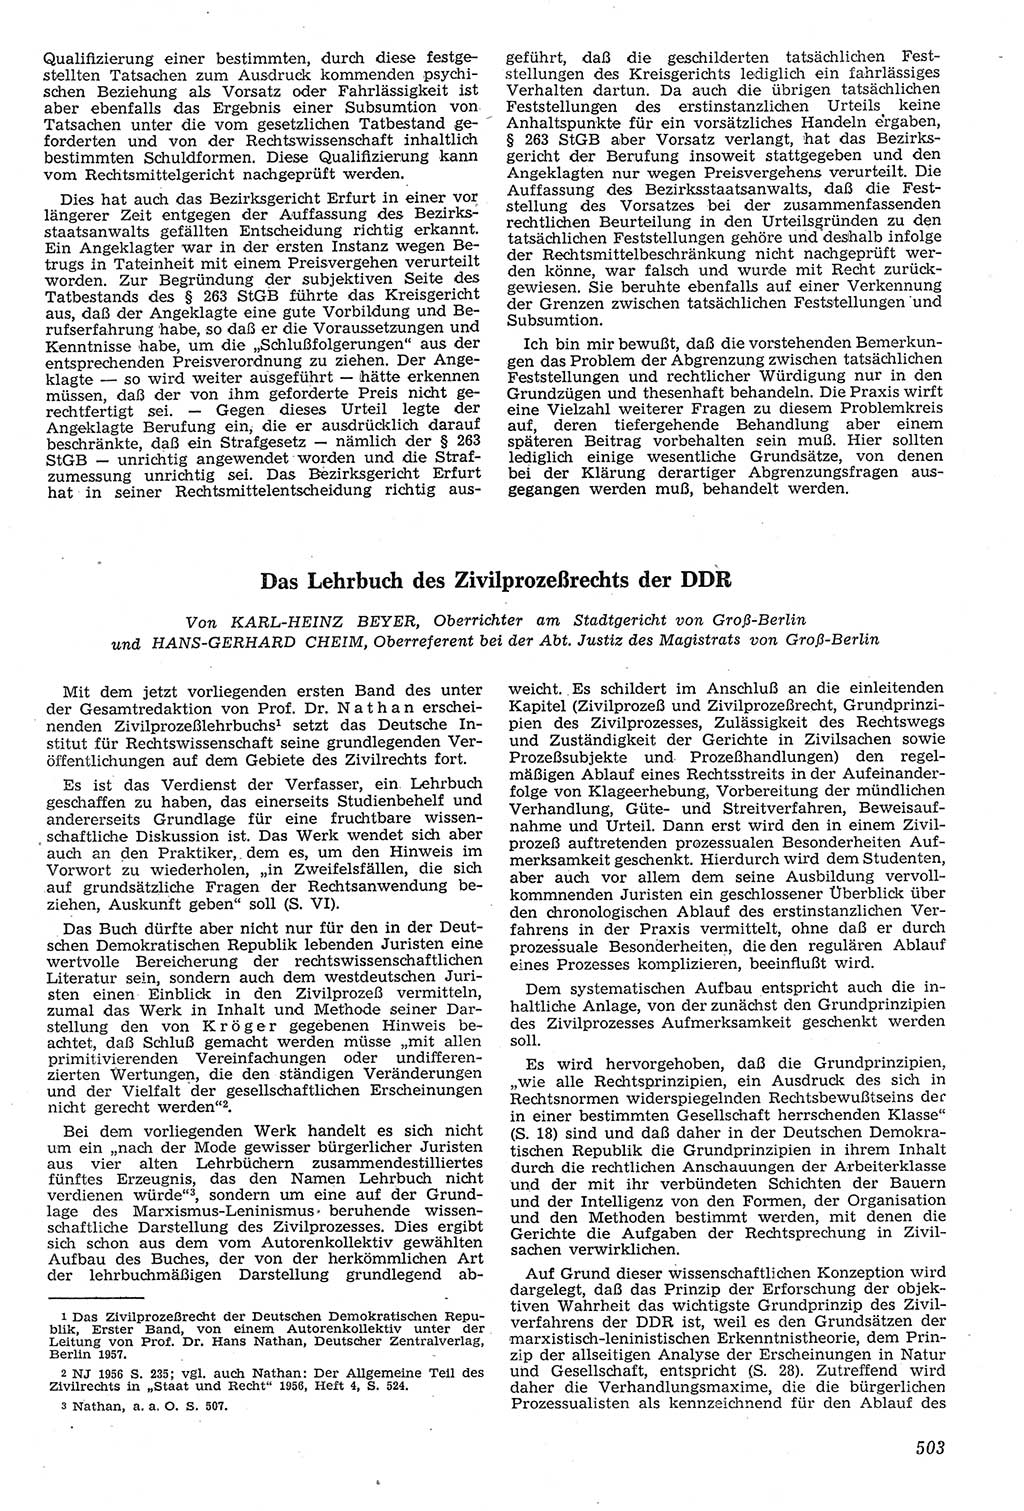 Neue Justiz (NJ), Zeitschrift für Recht und Rechtswissenschaft [Deutsche Demokratische Republik (DDR)], 11. Jahrgang 1957, Seite 503 (NJ DDR 1957, S. 503)